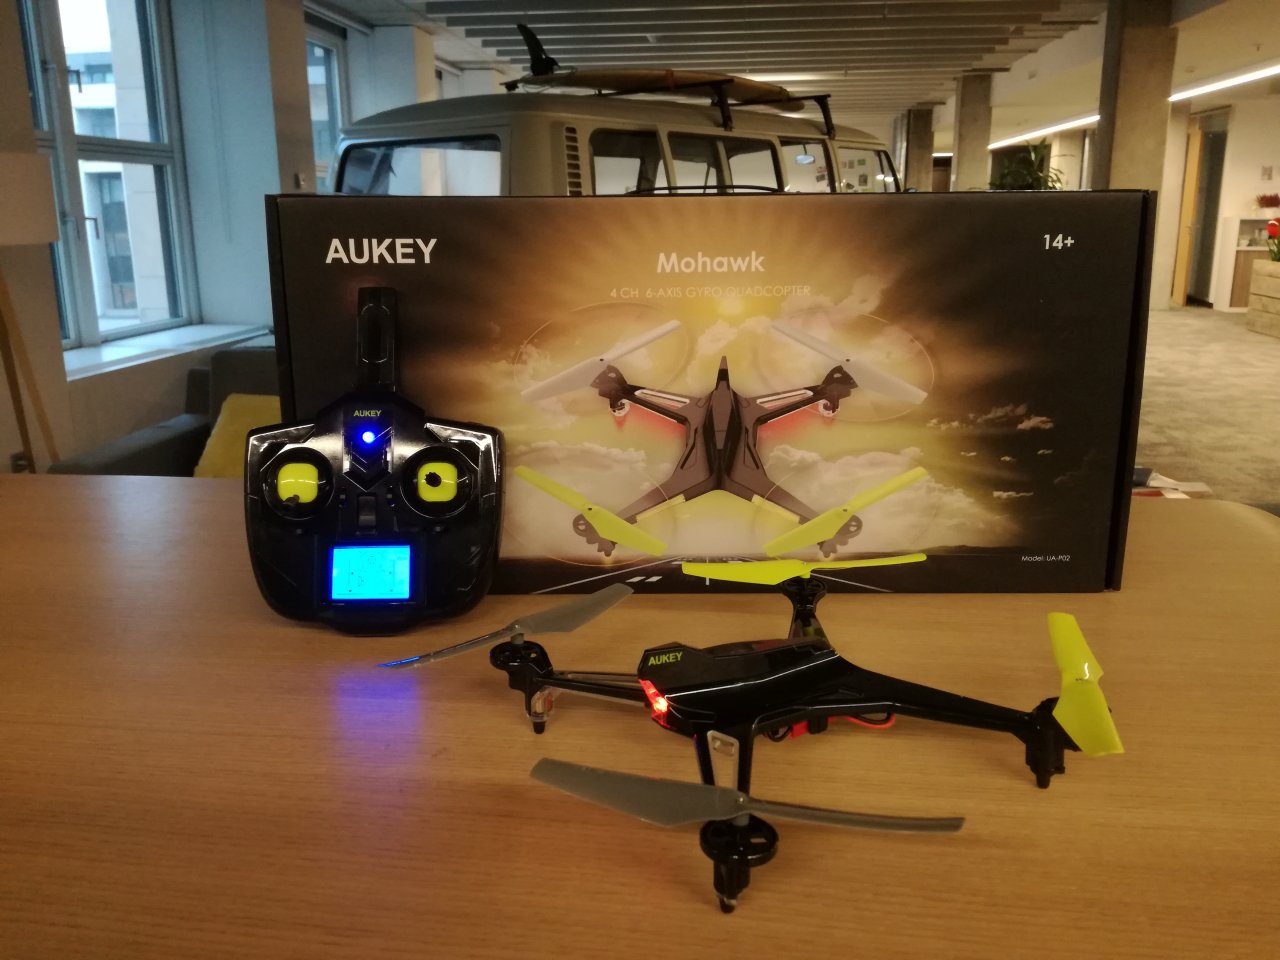 Aukey UA-P02 Mohawk Drohne und Fernbedienung mit LCD Display 